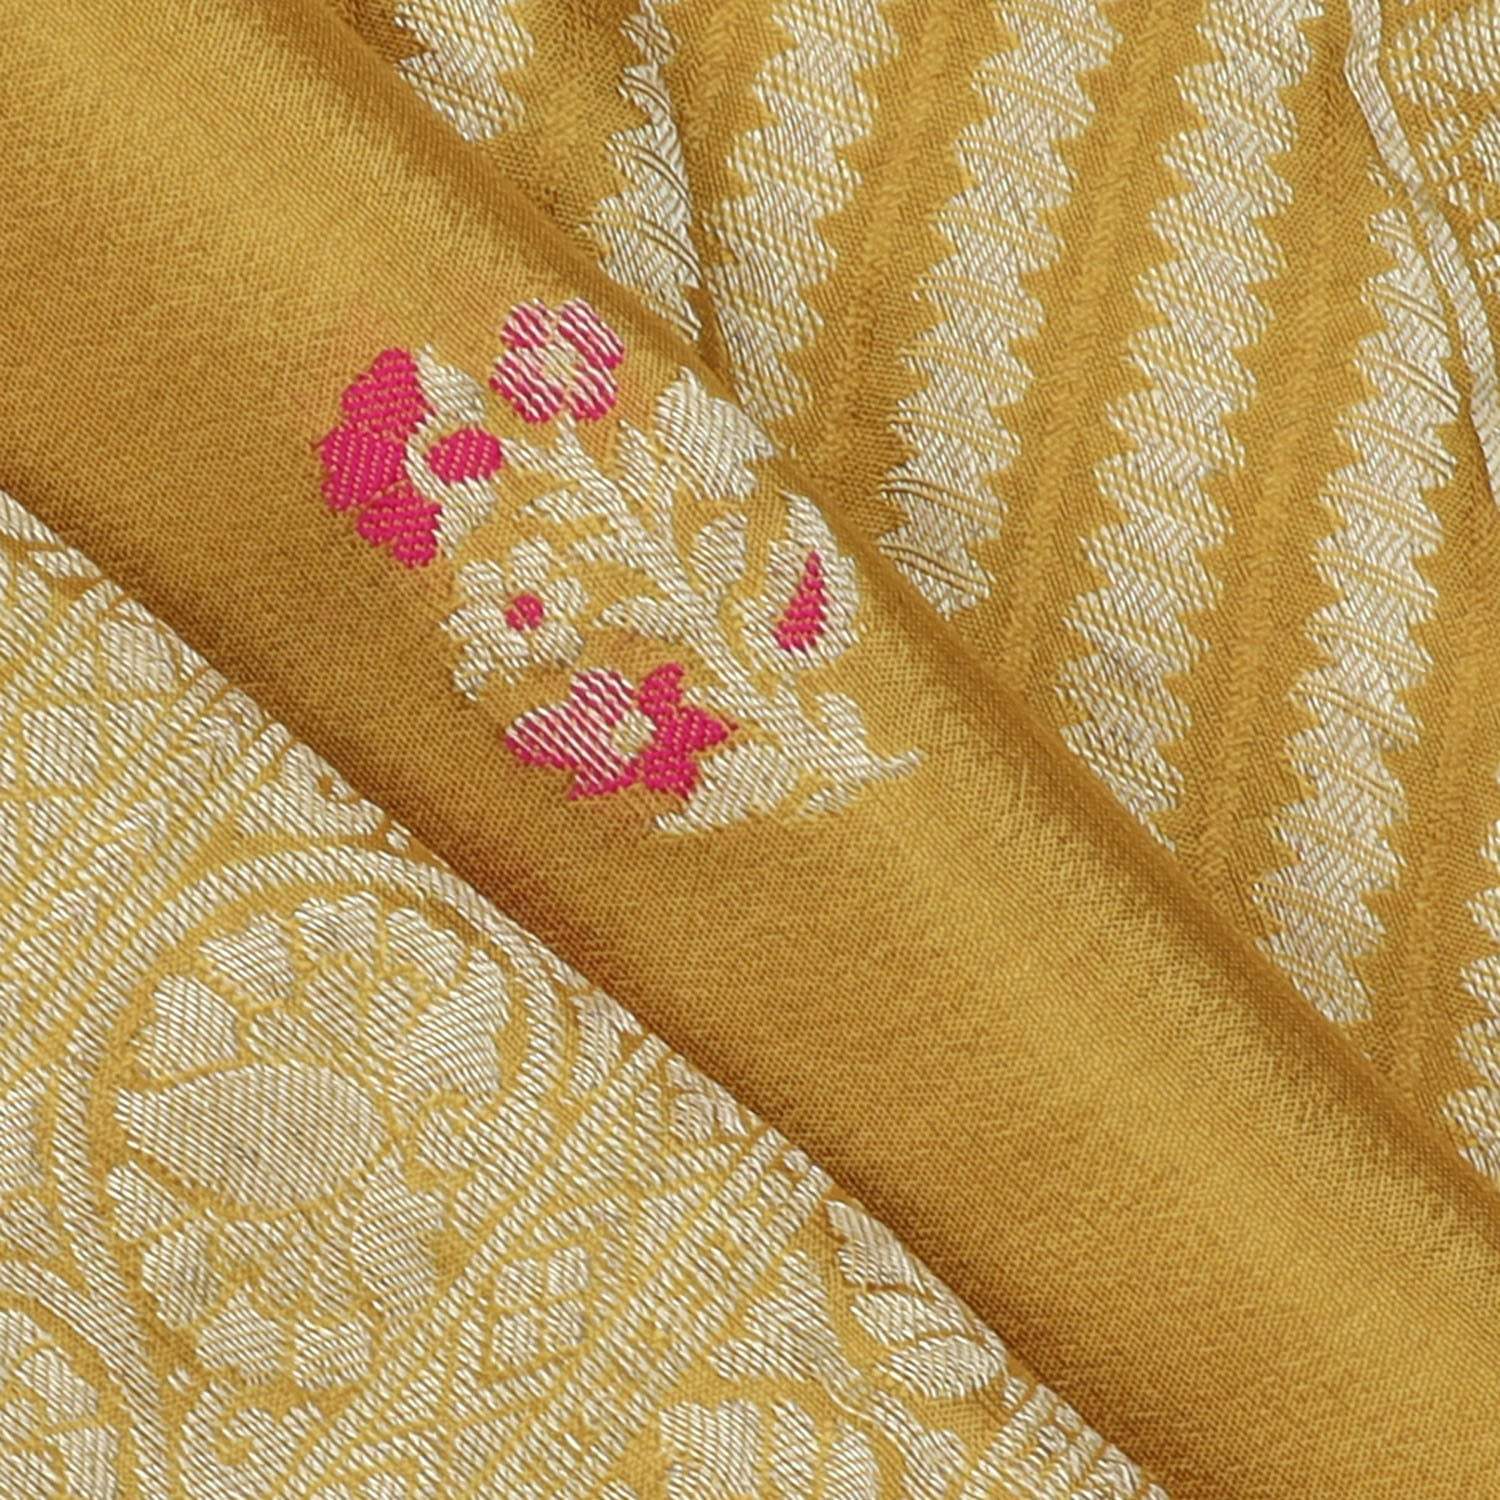 Mustard Yellow Banarasi Silk Saree With Floral Motifs - Singhania's